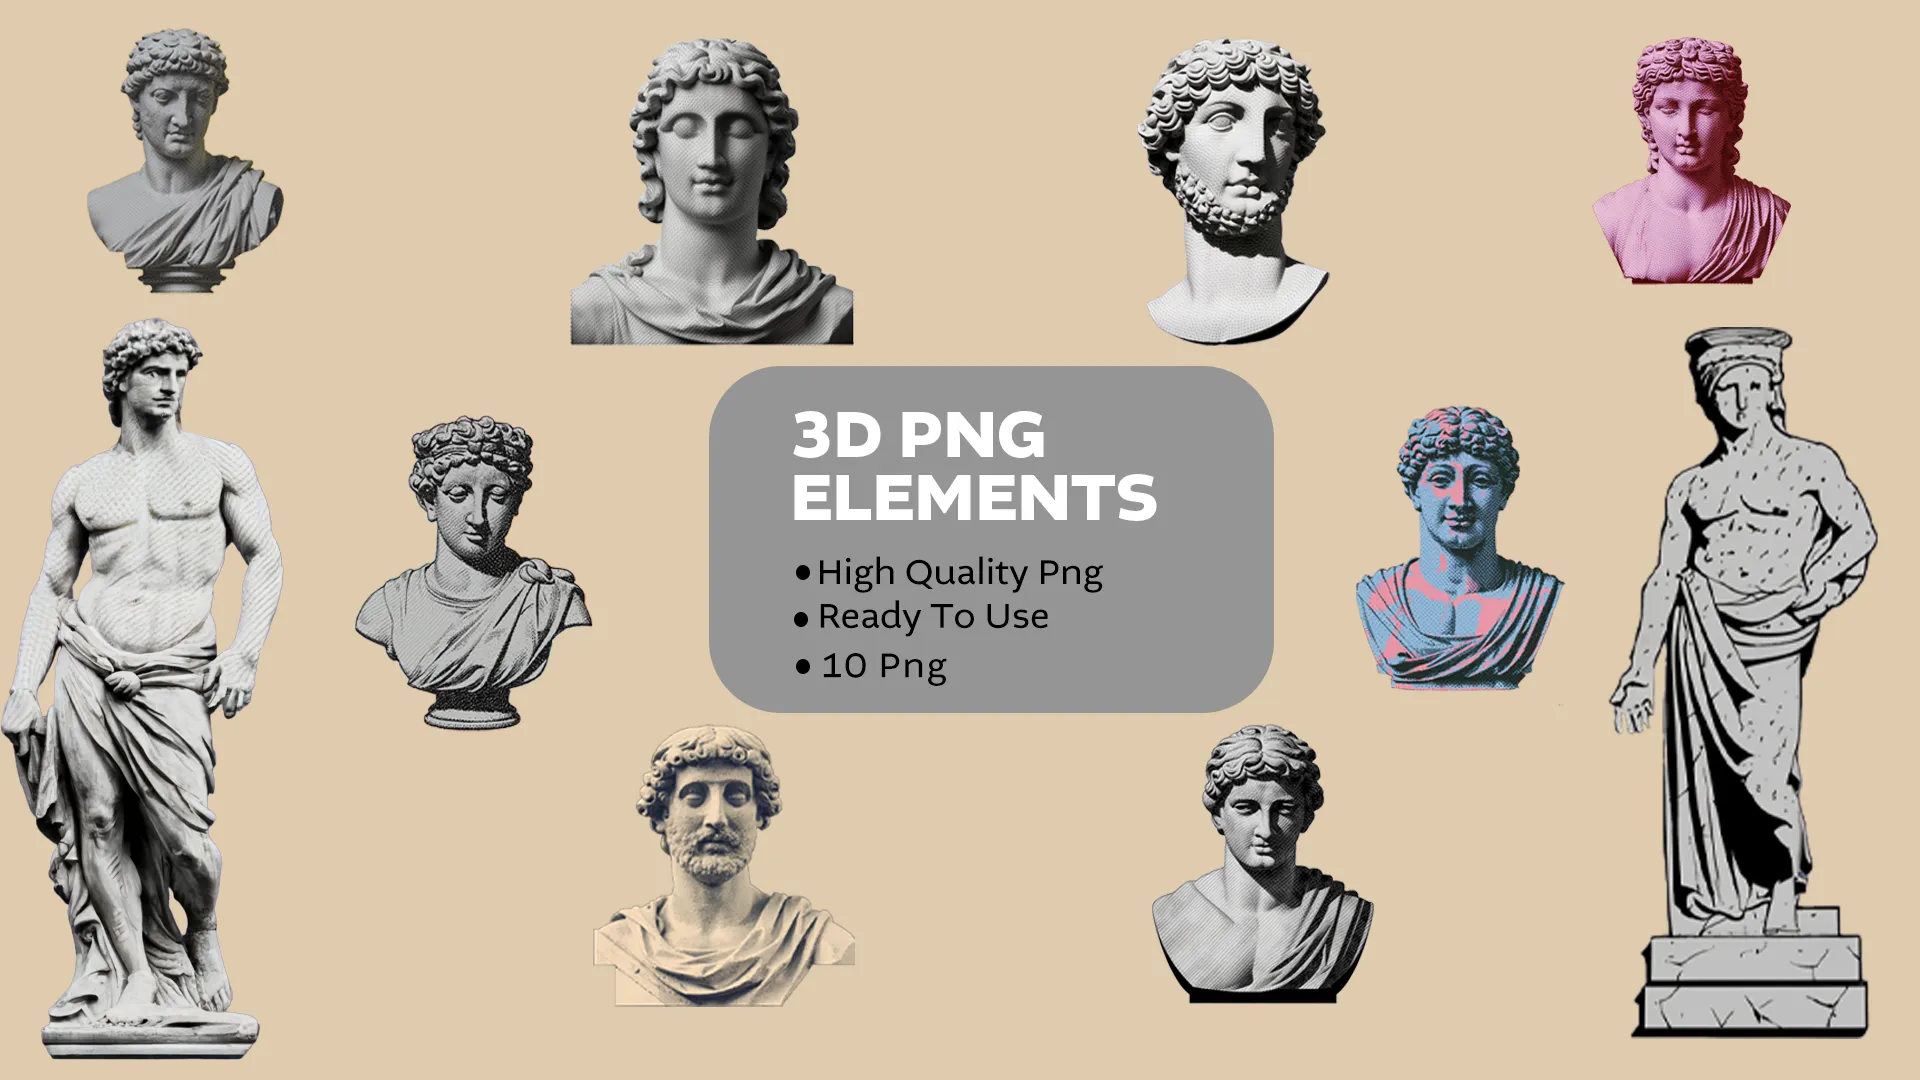 Retro Michelangelo Statue design 3D elements image